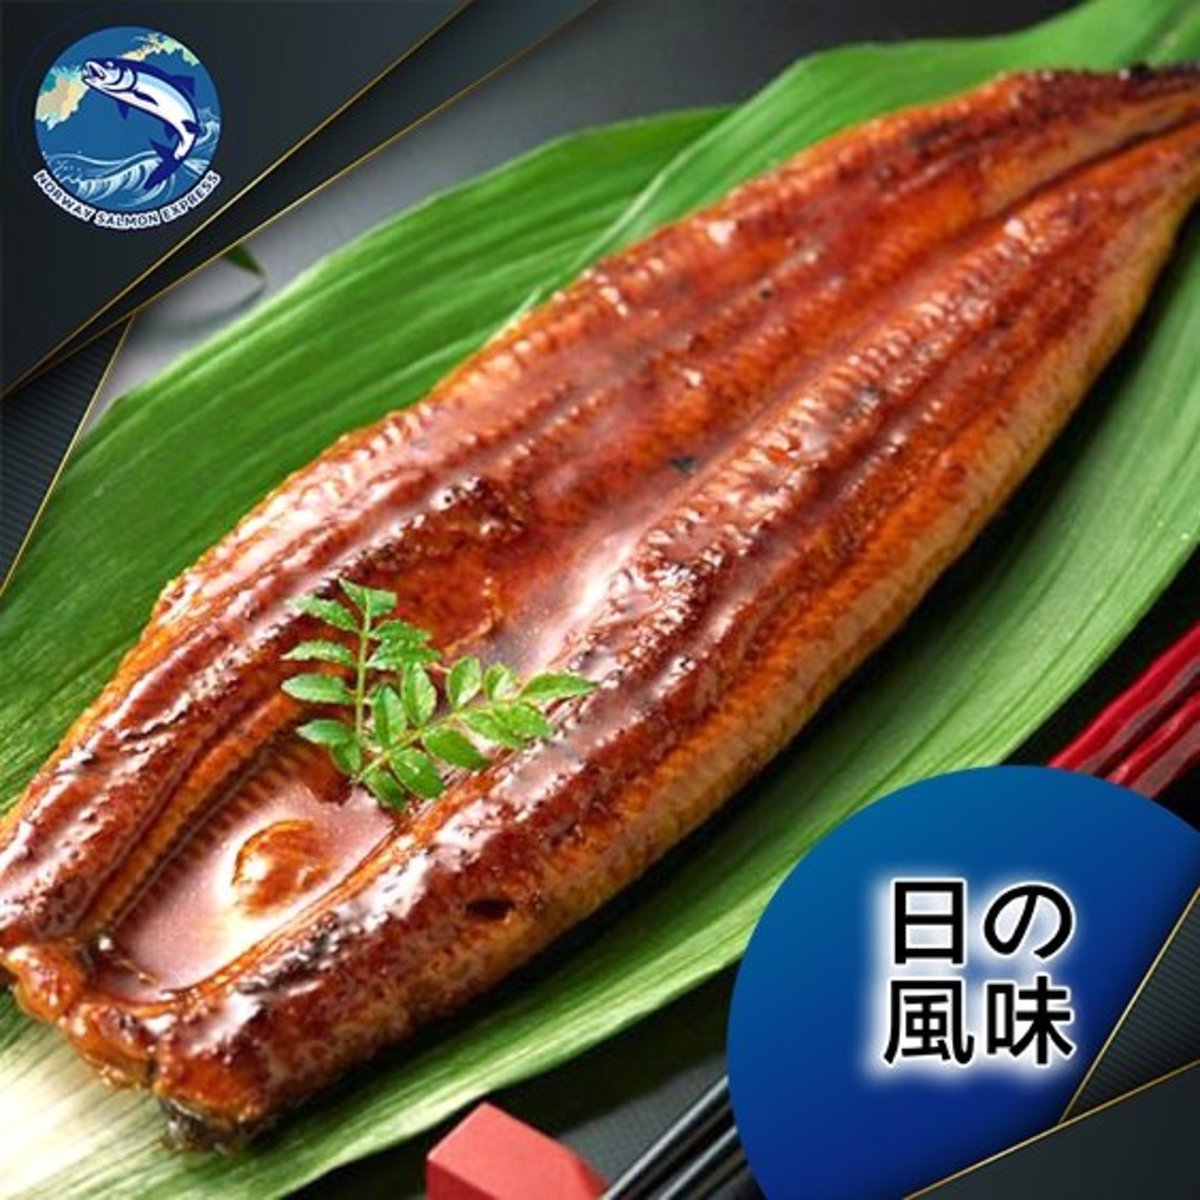 原條蒲燒鰻魚 (1條100g up)(急凍)